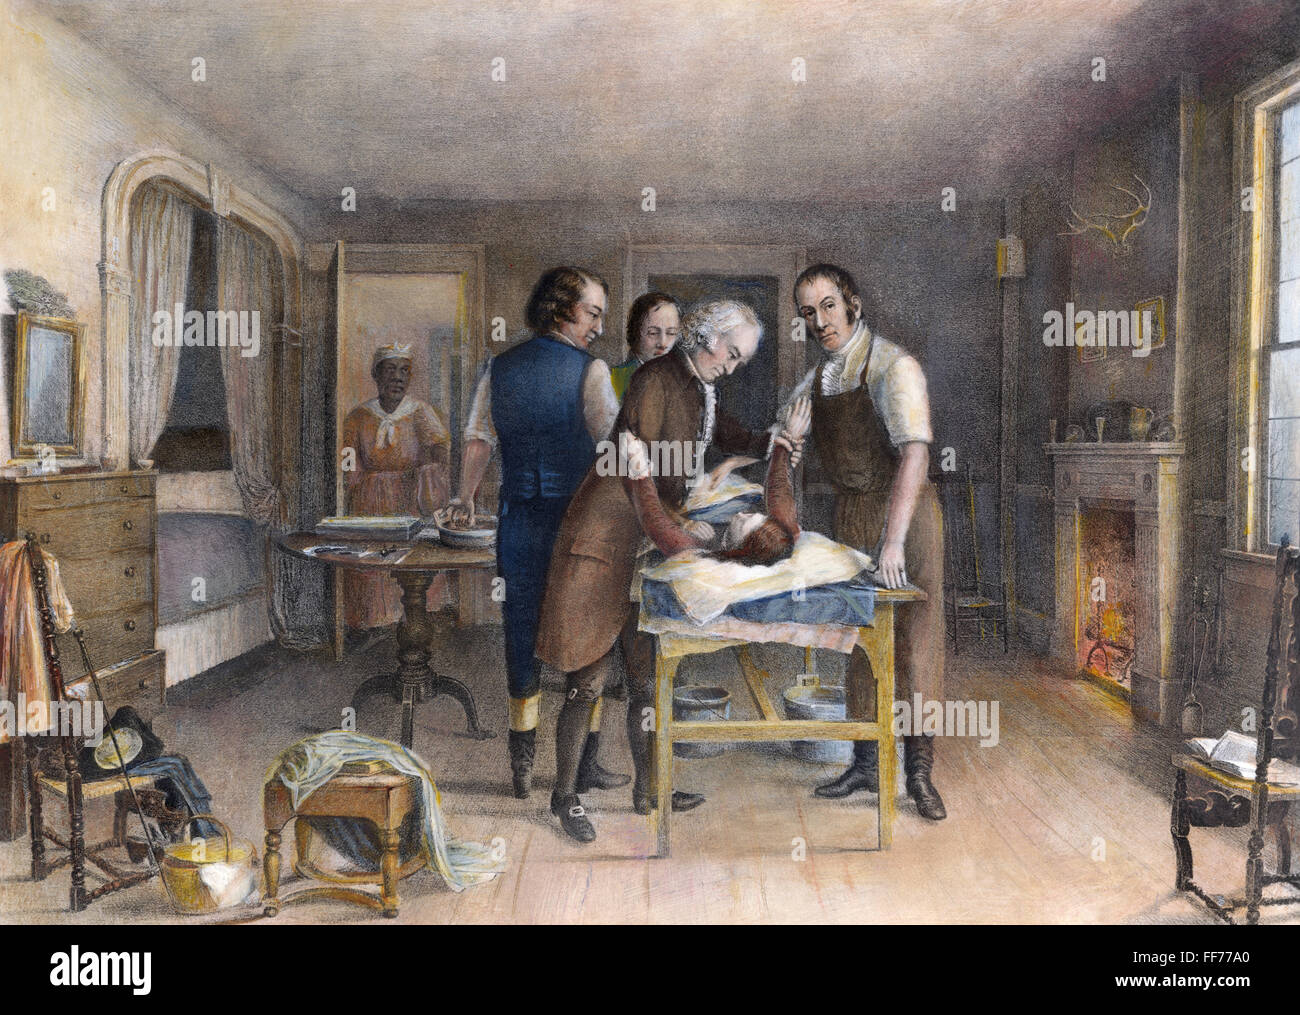 EPHRAIM McDOWELL, 1809. /NDr. Ephraim McDowell d'effectuer la première opération de chirurgie ovarienne enregistré aux États-Unis à Danville, Kentucky, en décembre 1809. Lithographie, 19ème siècle. Banque D'Images